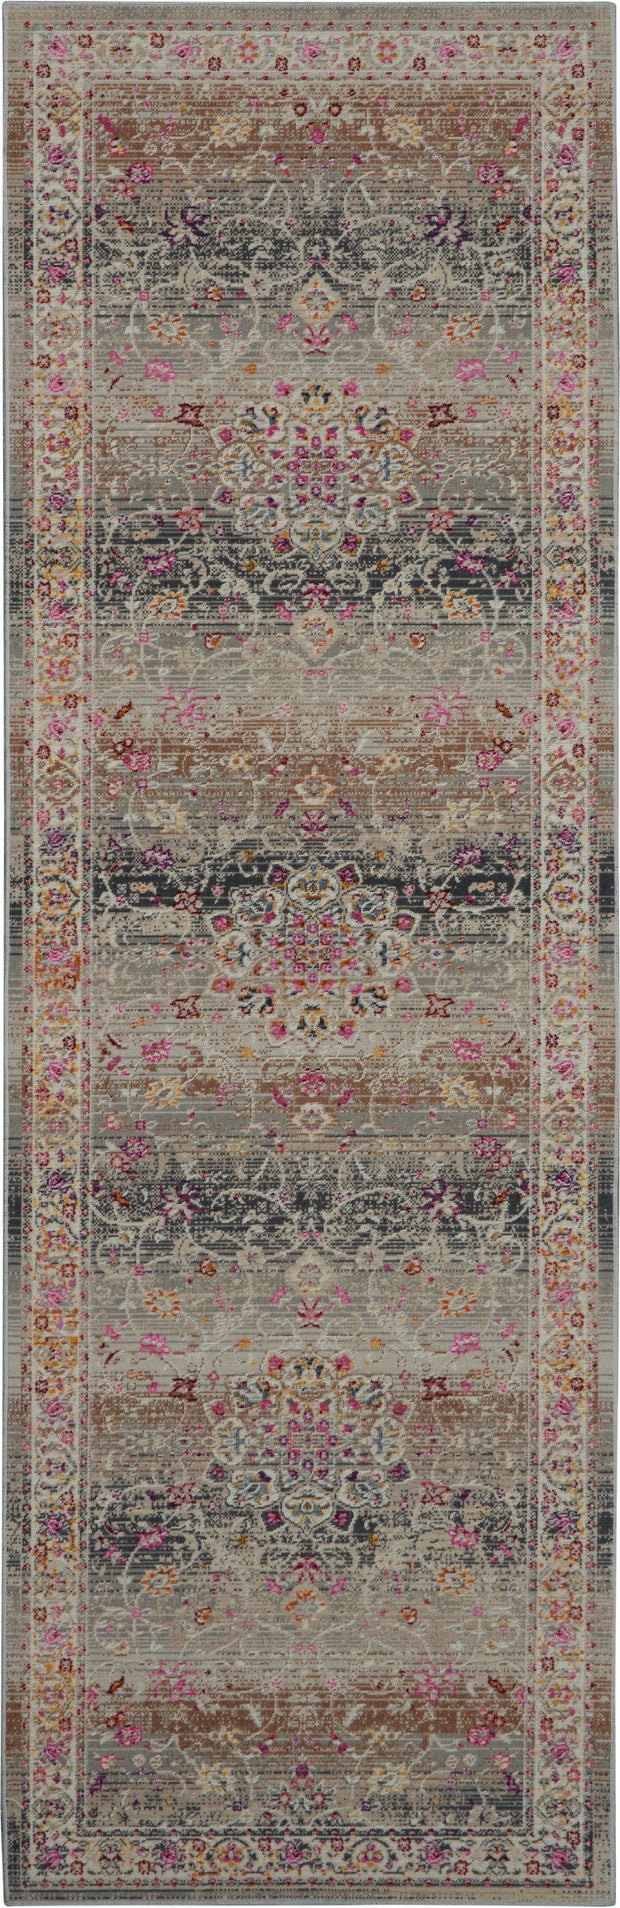 vintage kashan grey rug by nourison 99446455048 redo 3